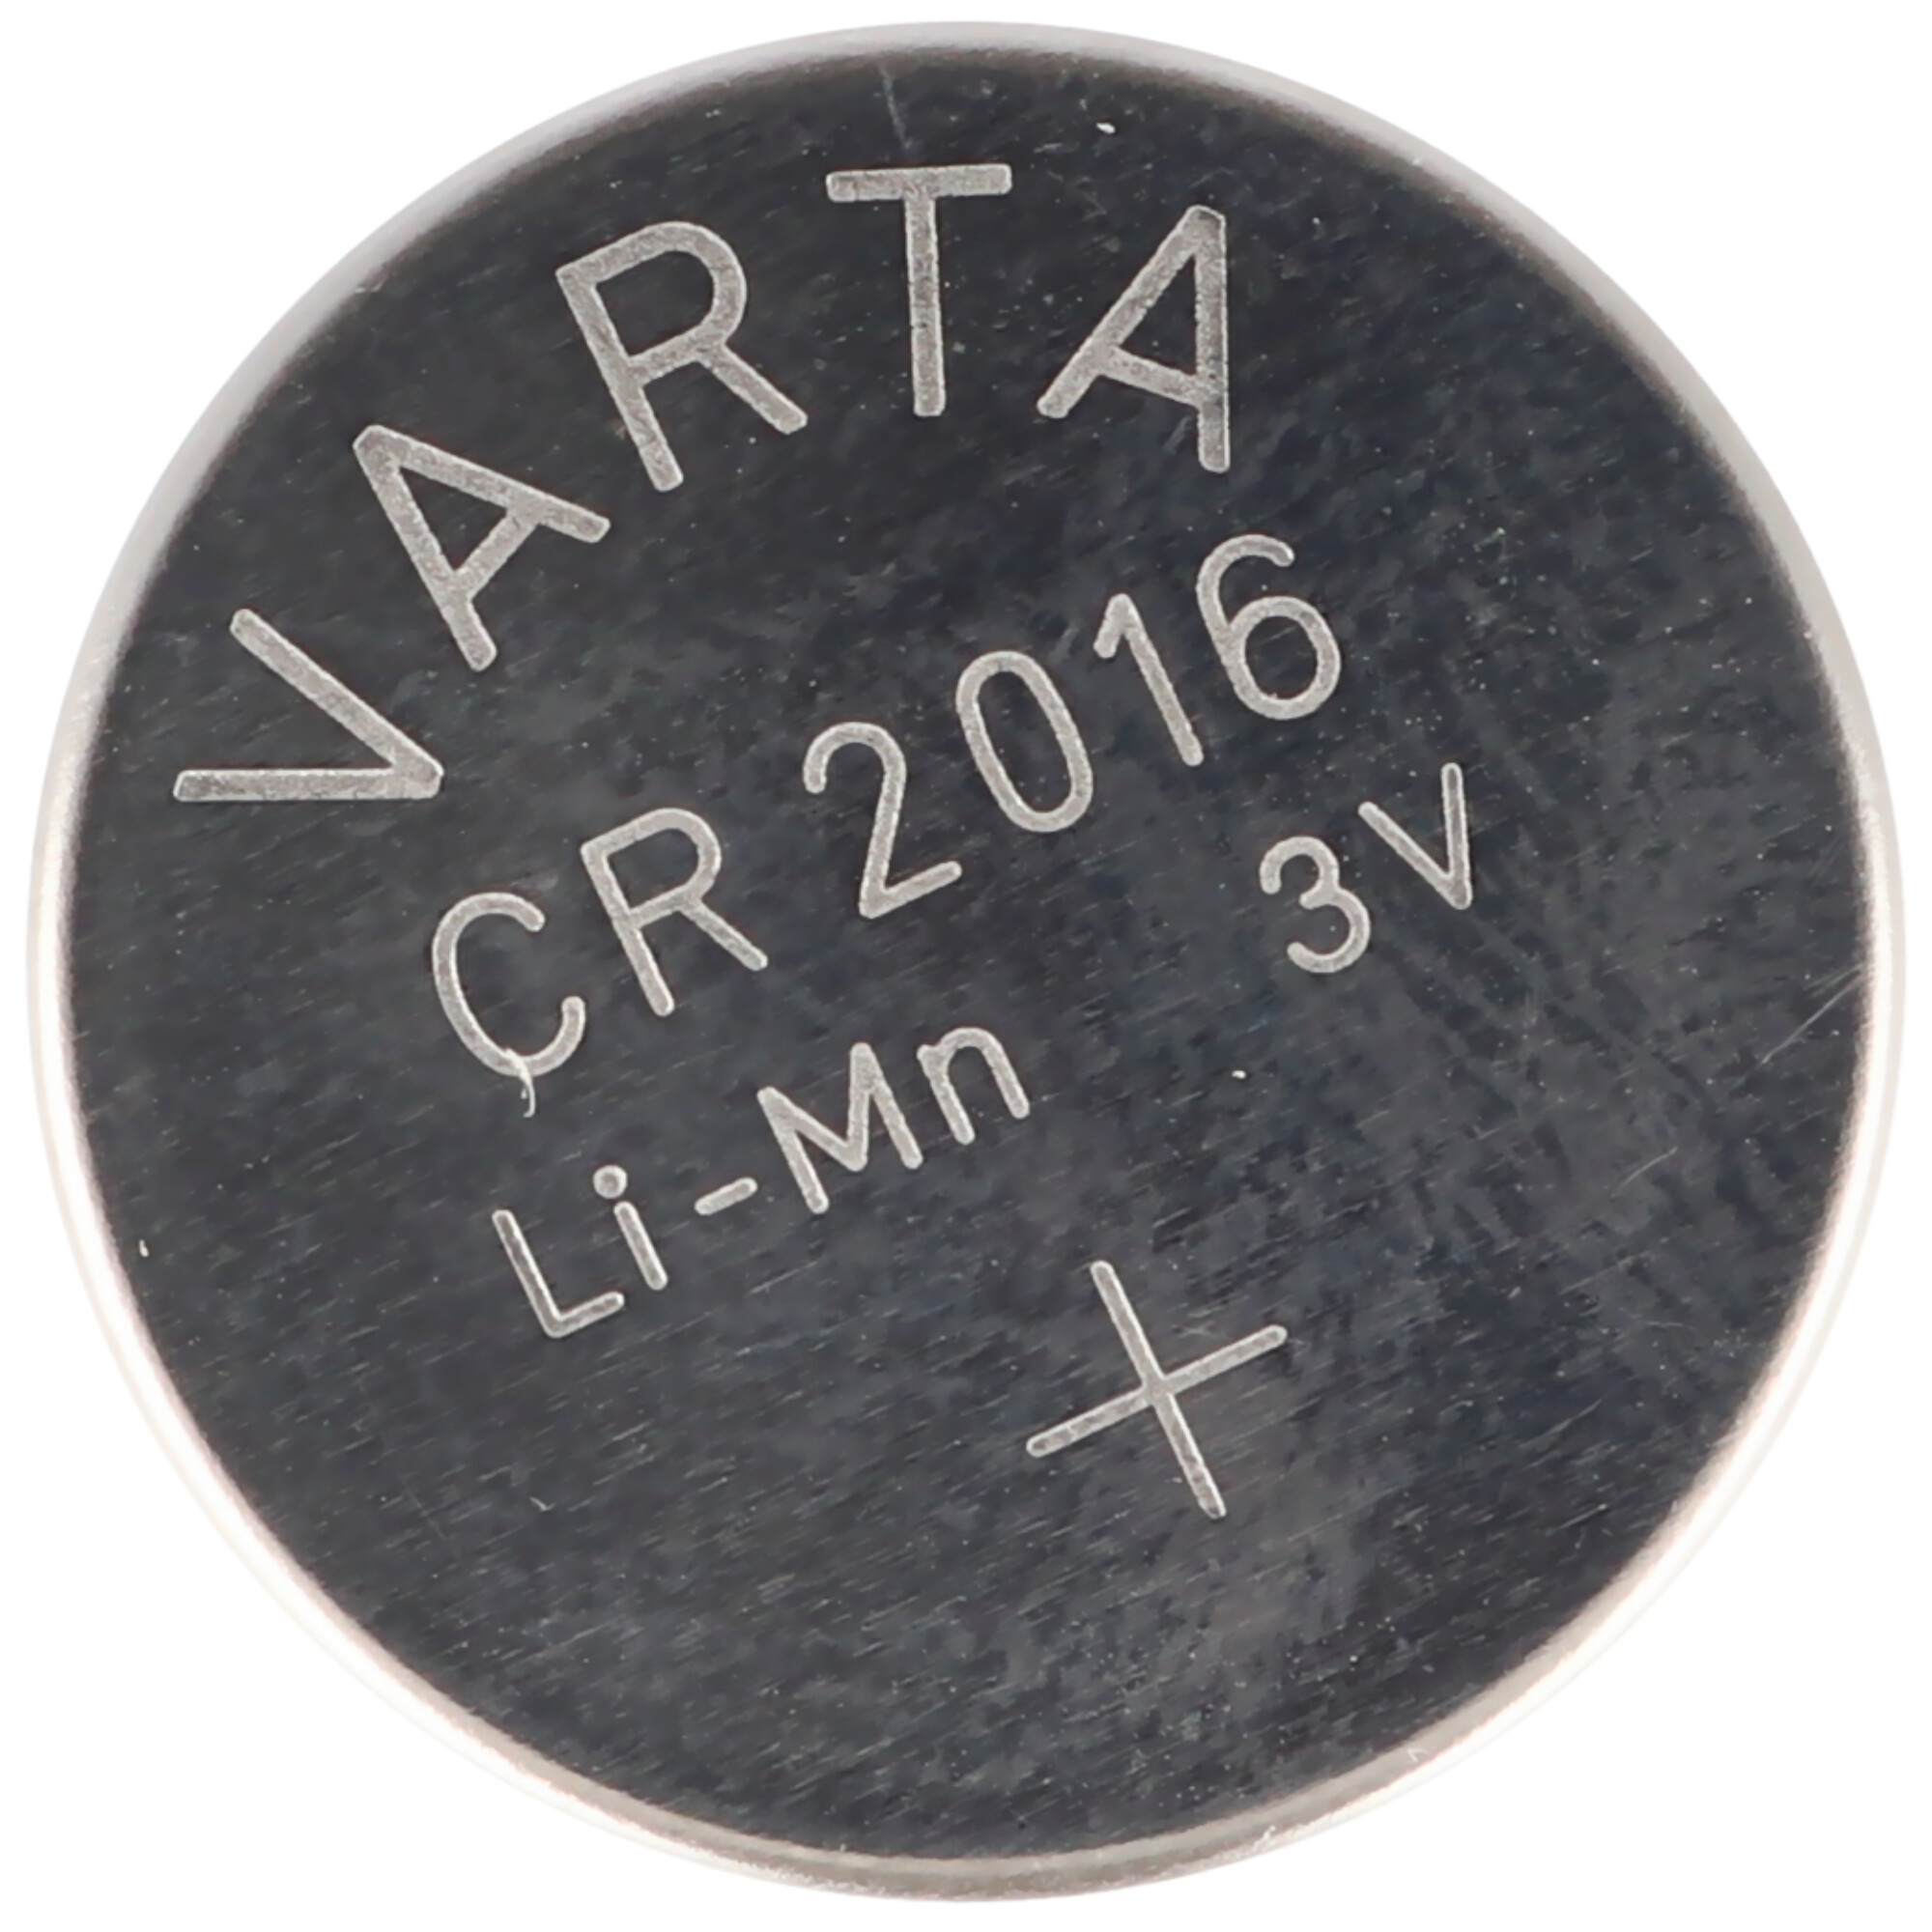 Varta Knopfzelle Lithium CR2016 2016-3 V Batterie Knopfbatterie DL2016 